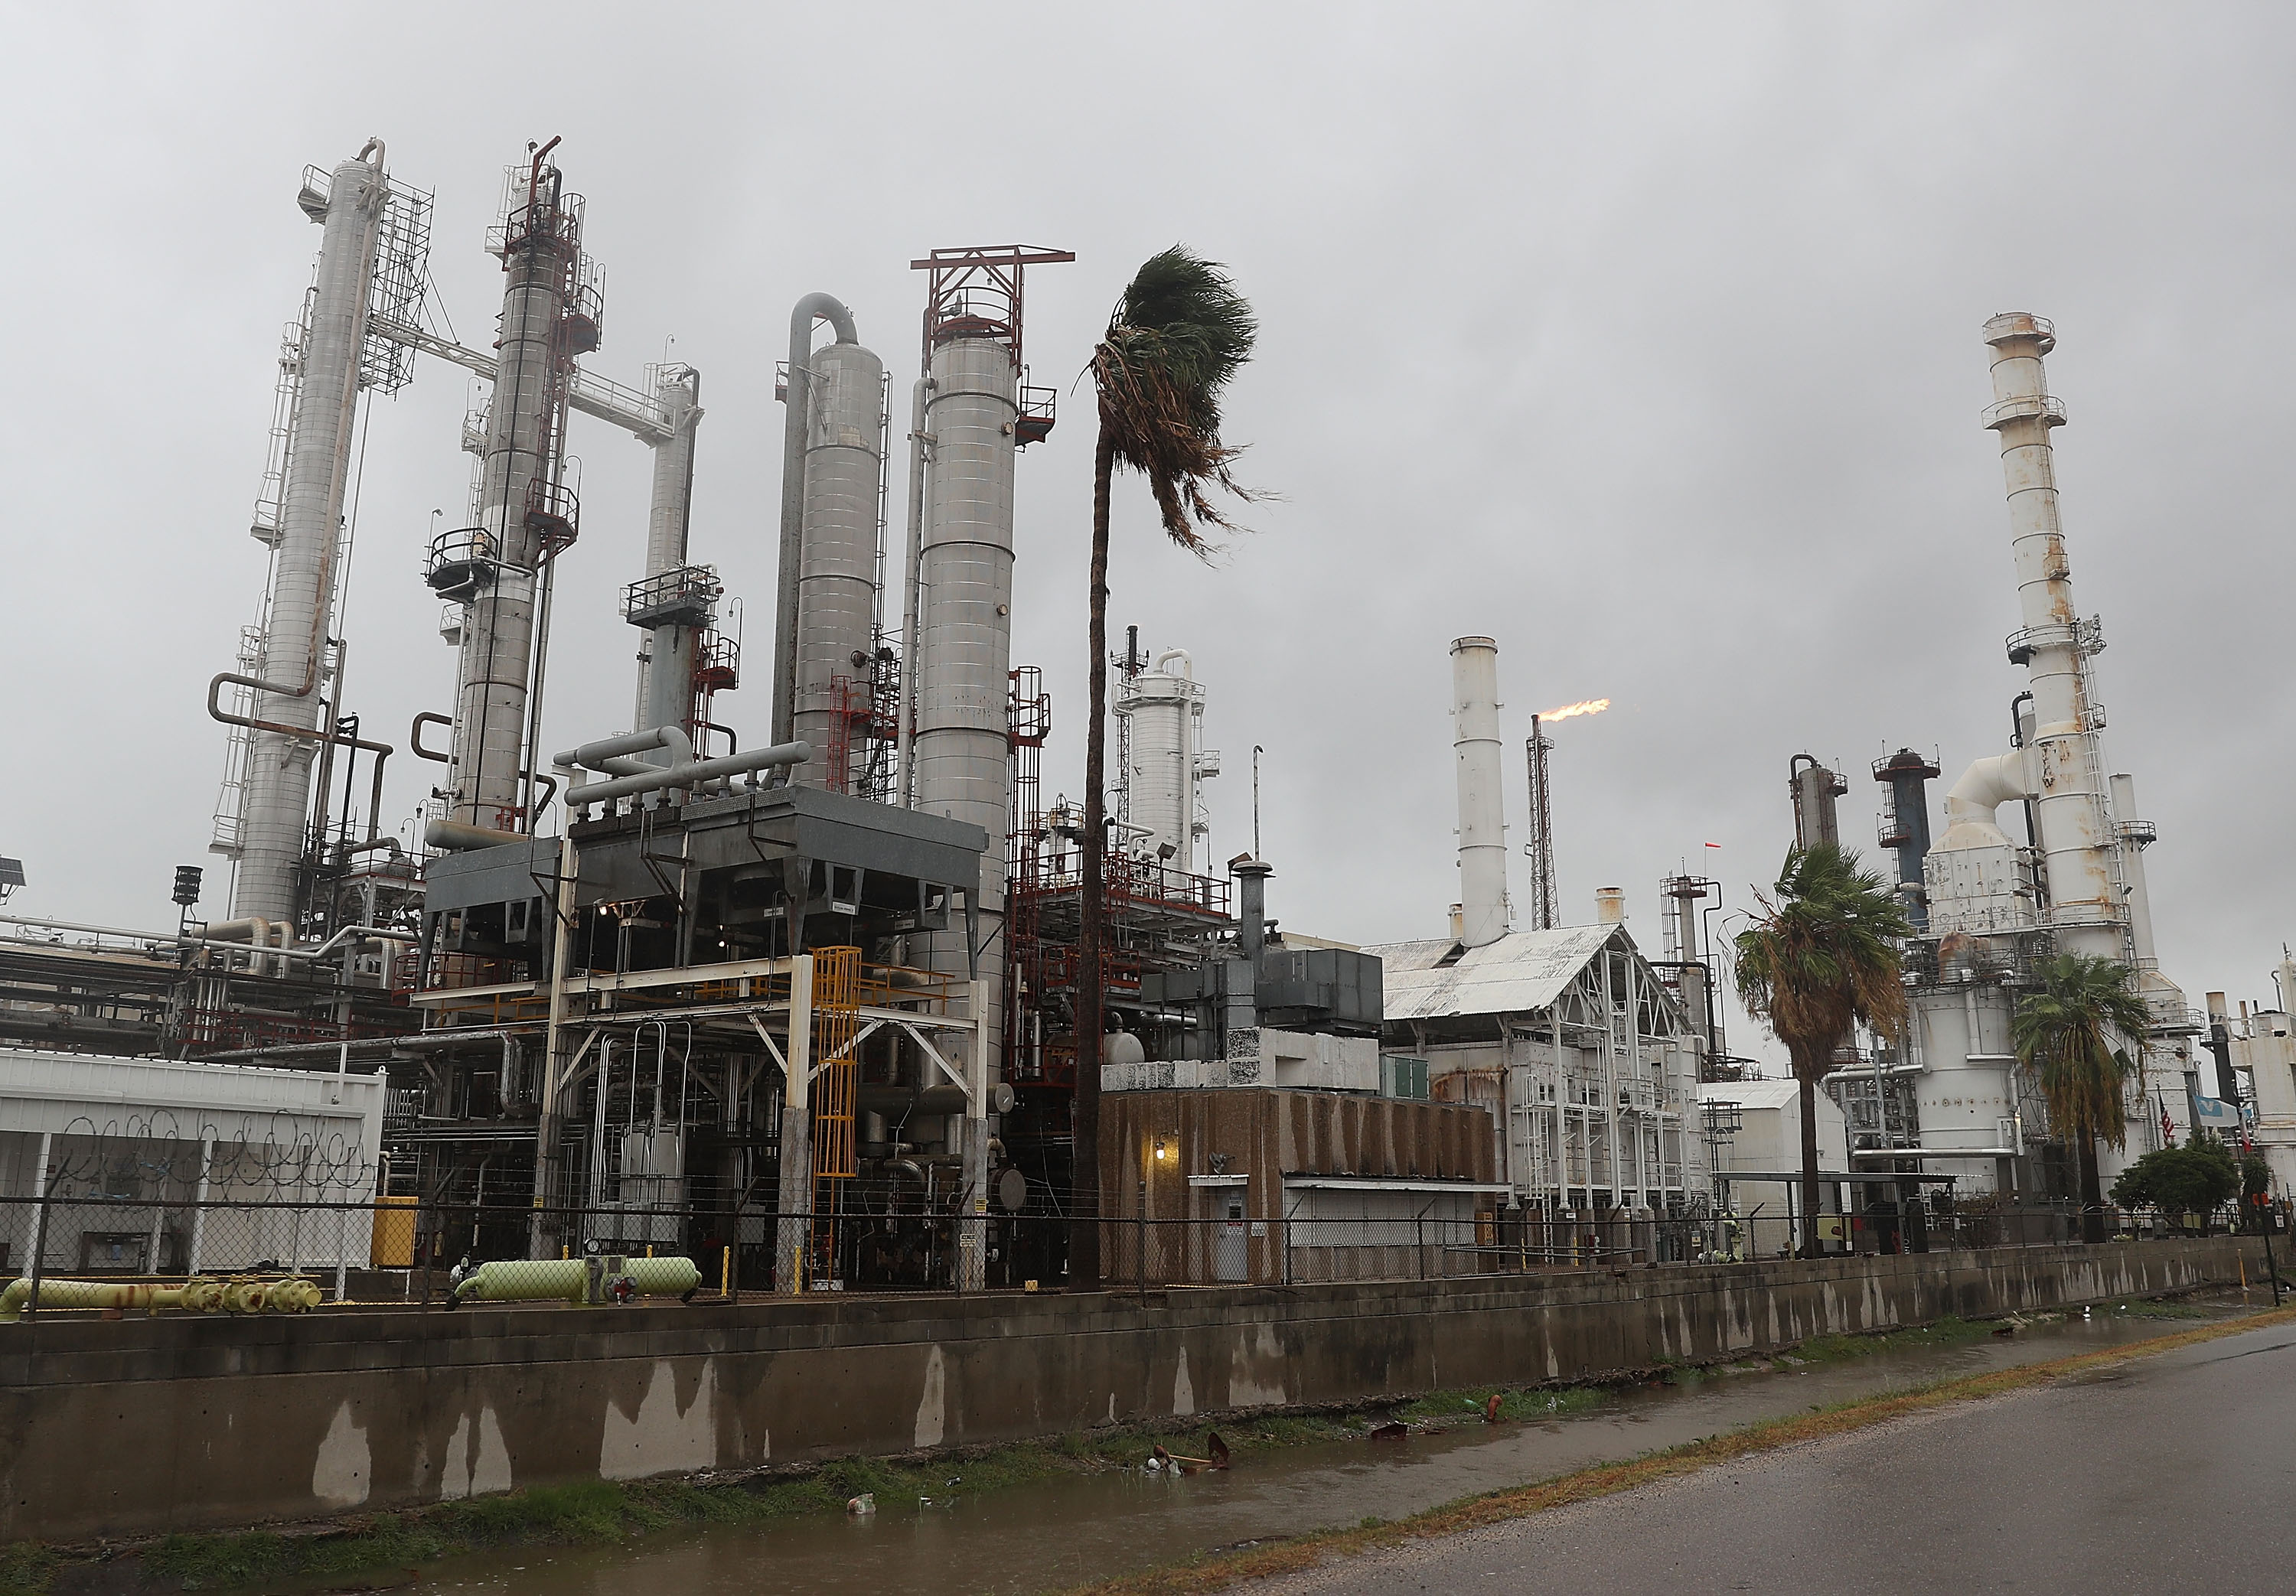 An oil refinery in Corpus Christi, Texas